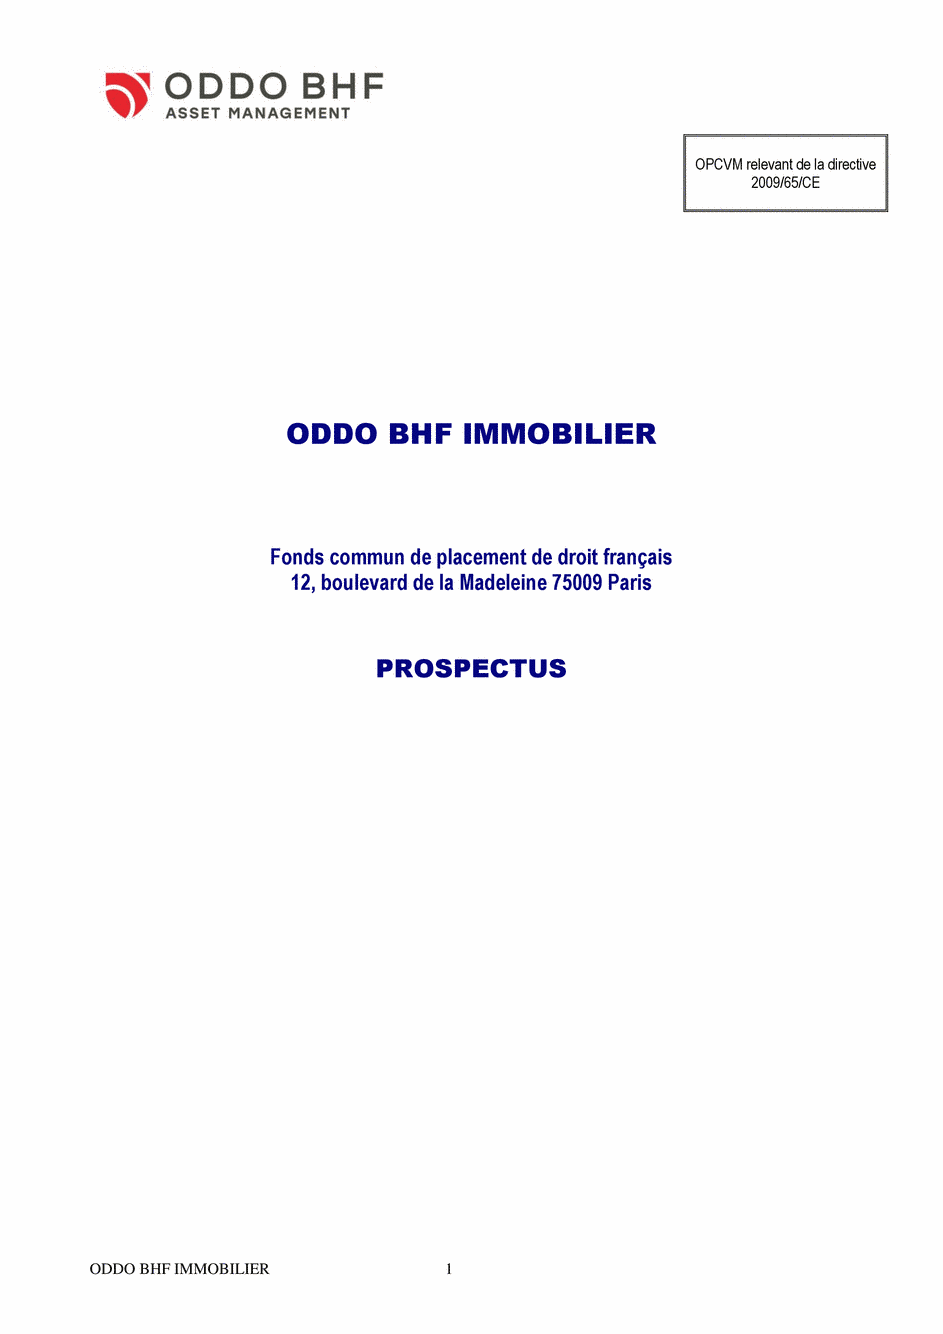 Prospectus ODDO BHF IMMOBILIER GC-EUR - 12/11/2019 - Français